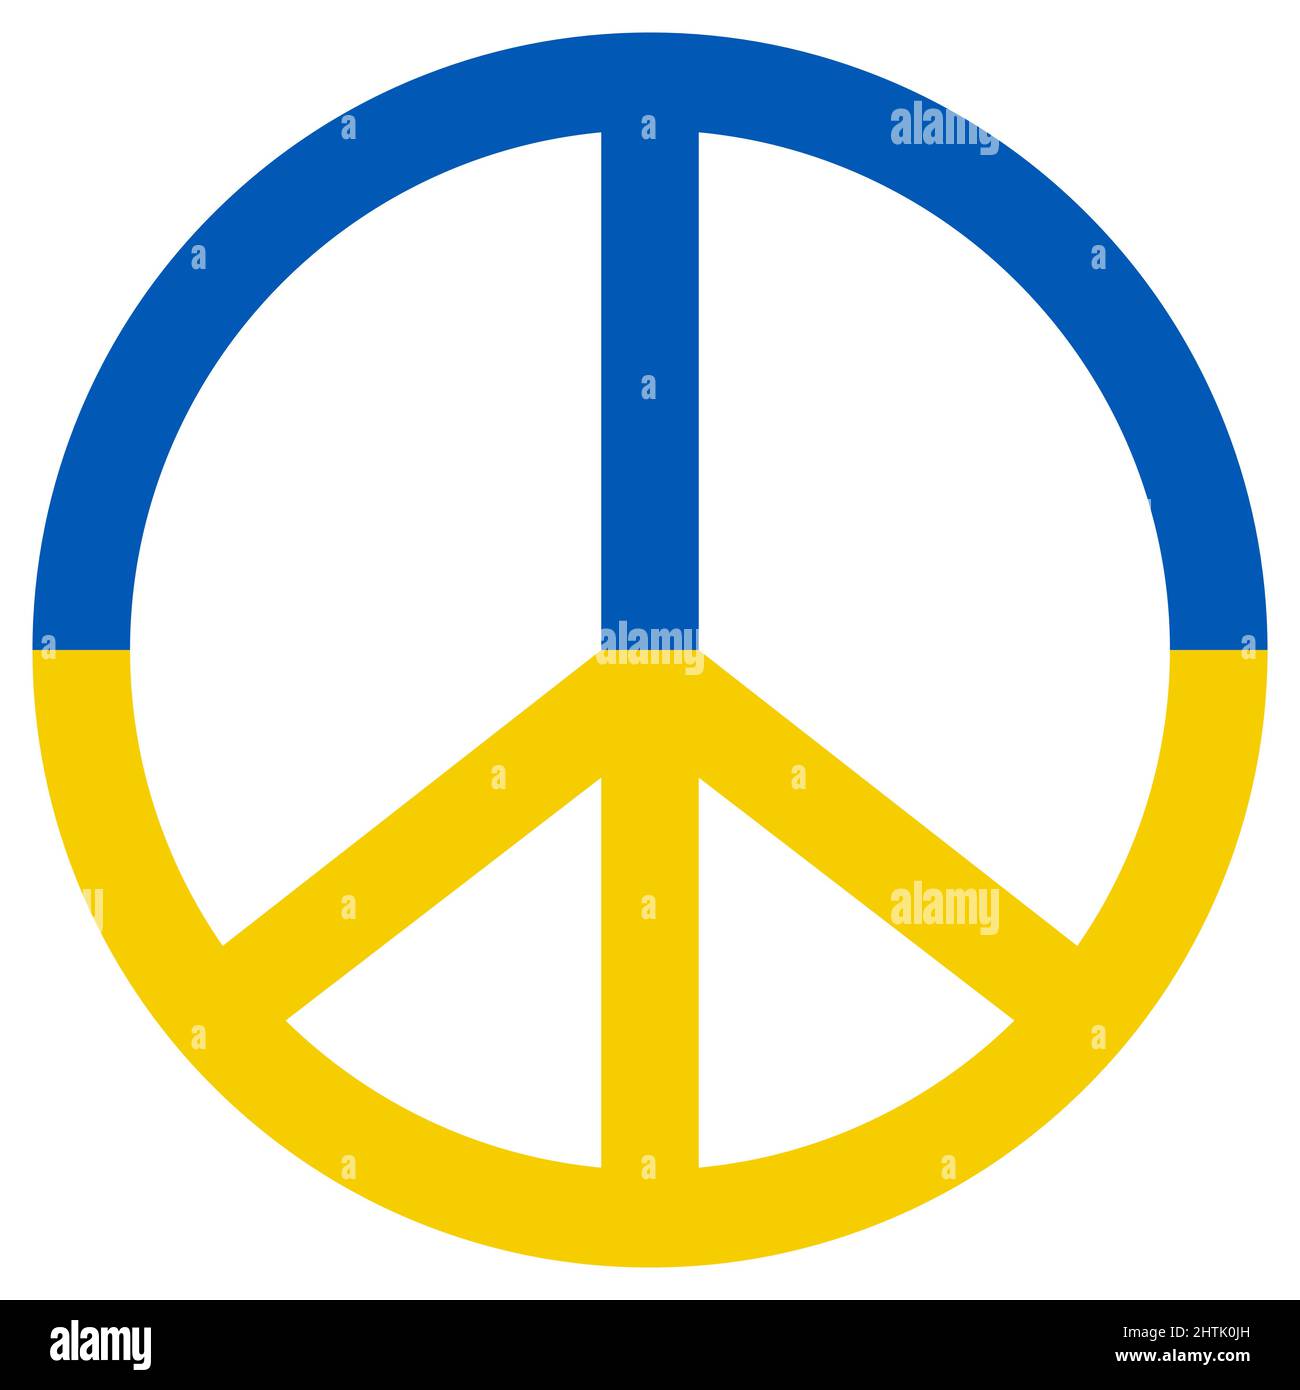 Segno di pace pacifico, bandiera ucraina, colore giallo blu di anti guerra, pacifico, conciliatorio Illustrazione Vettoriale